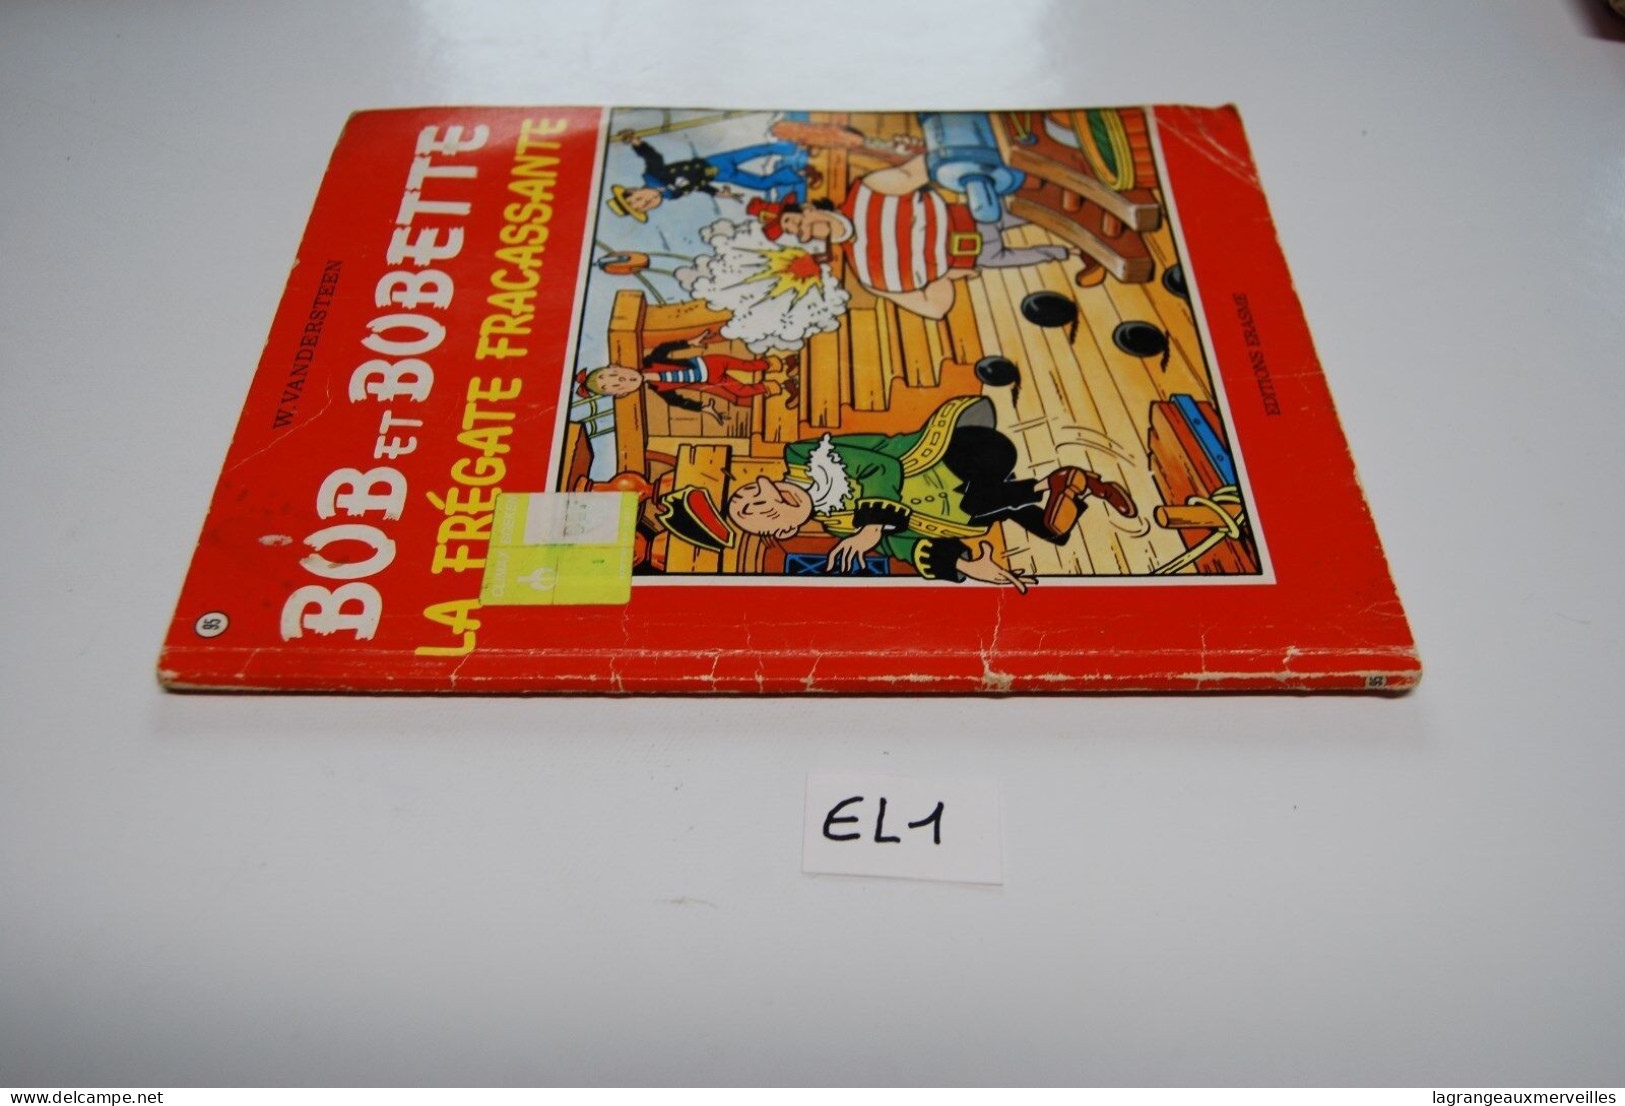 EL1 BD - Bob Et Bobette - La Frégate Fracassante - 1977 - Bob Et Bobette